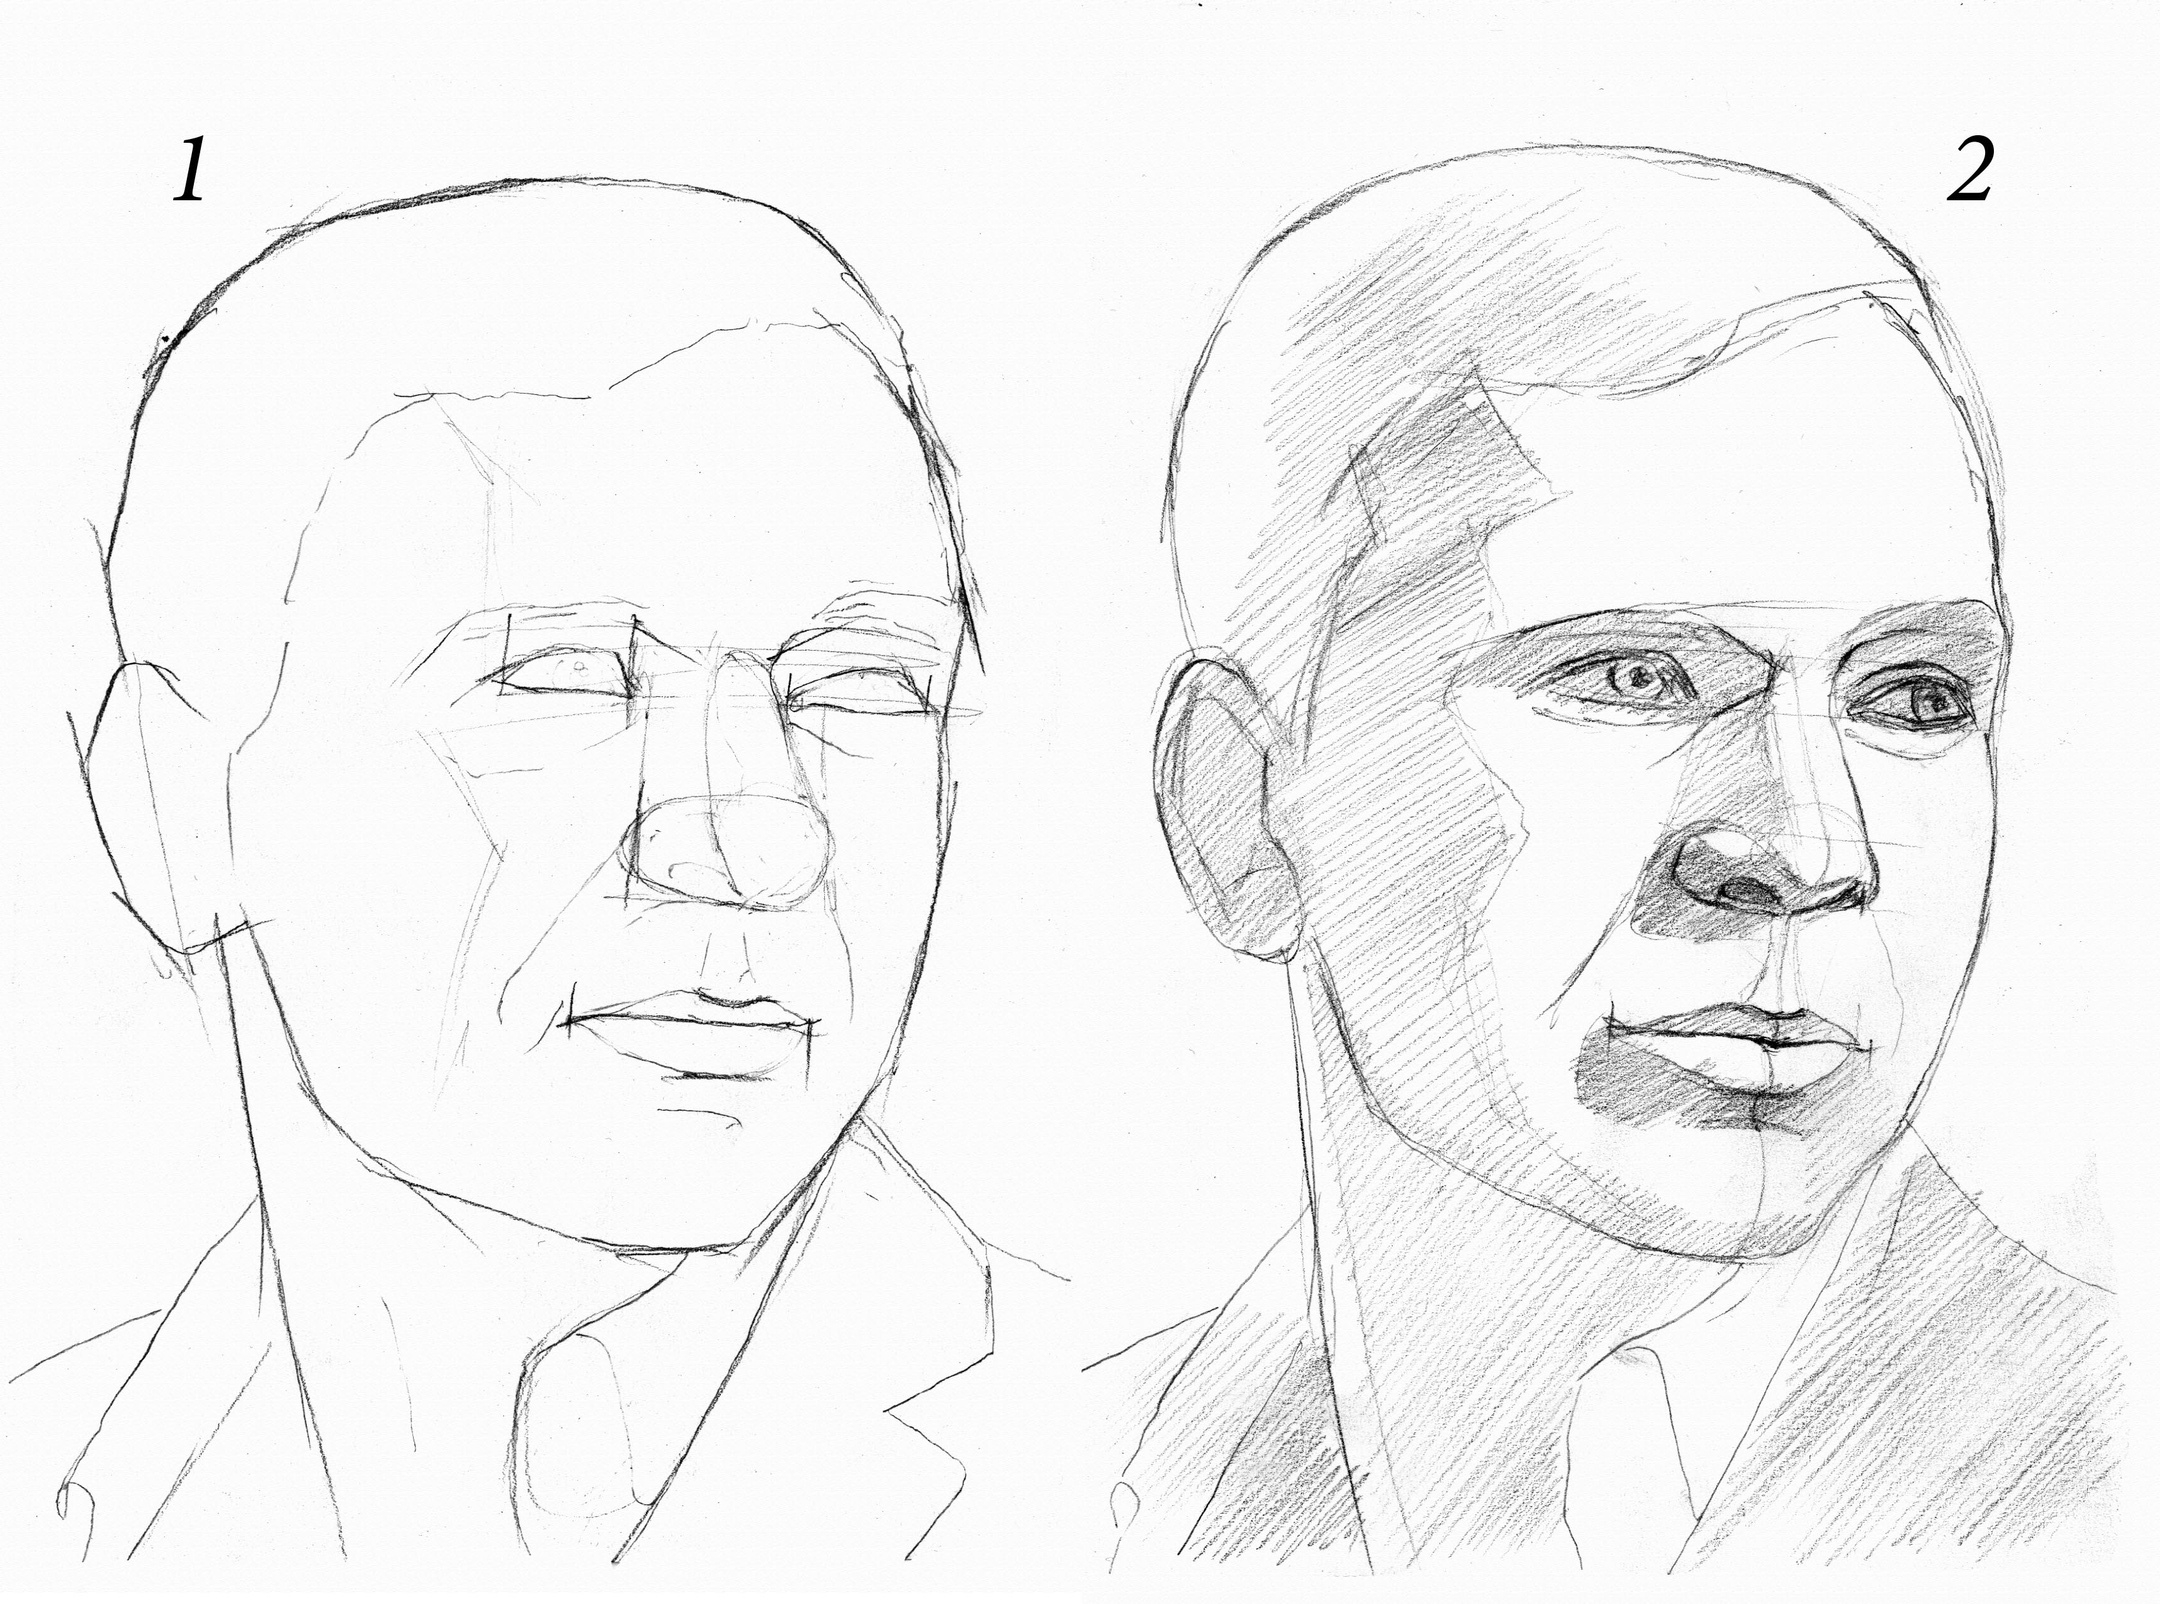 Как нарисовать портрет мужчины карандашом поэтапно для начинающих с фото пошагово